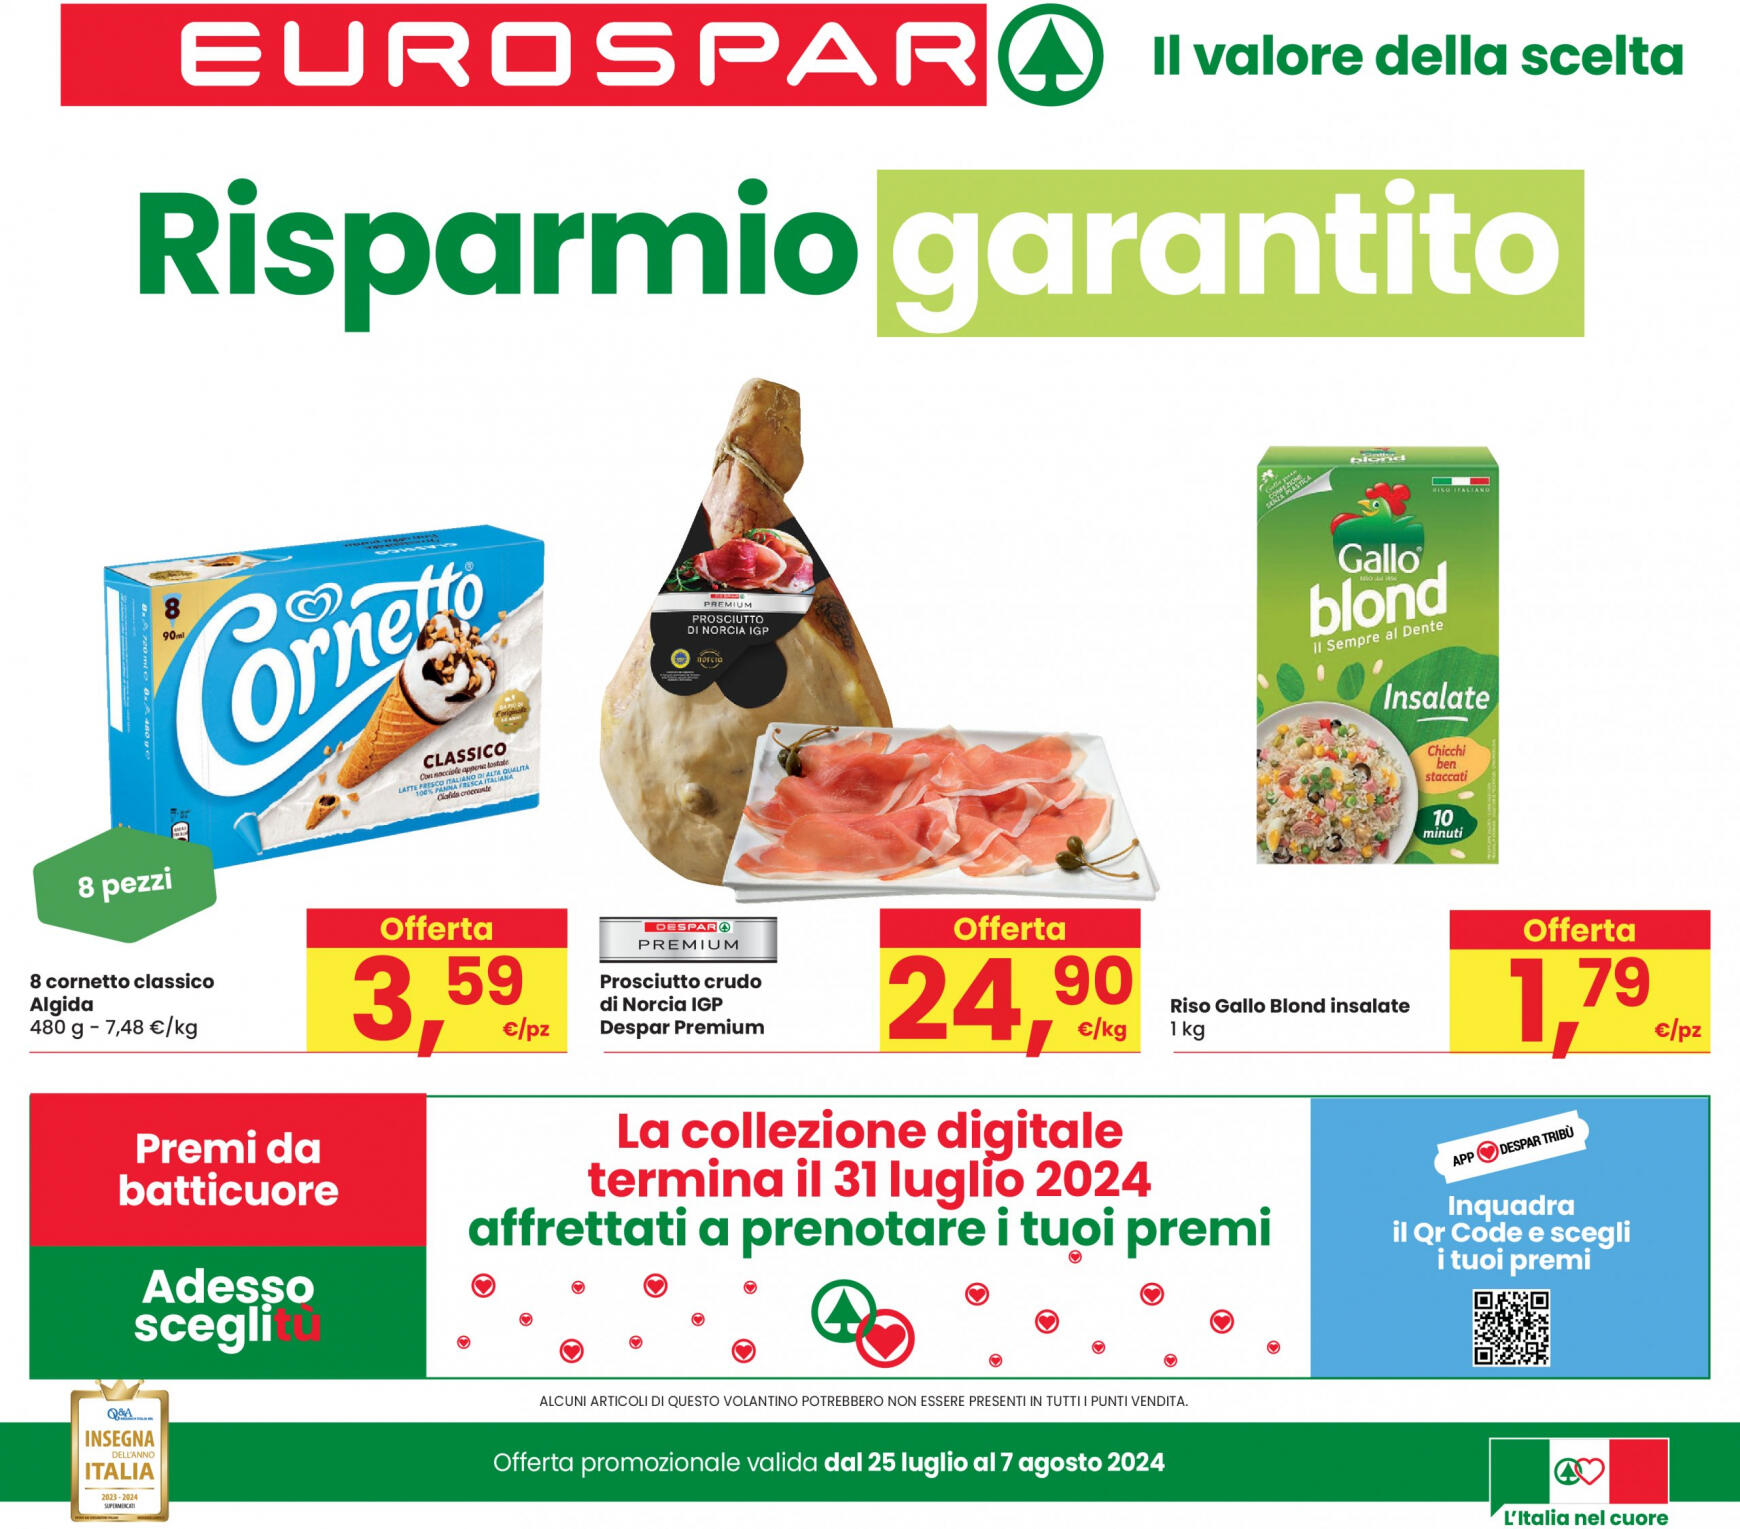 eurospar - Nuovo volantino Eurospar 25.07. - 07.08.